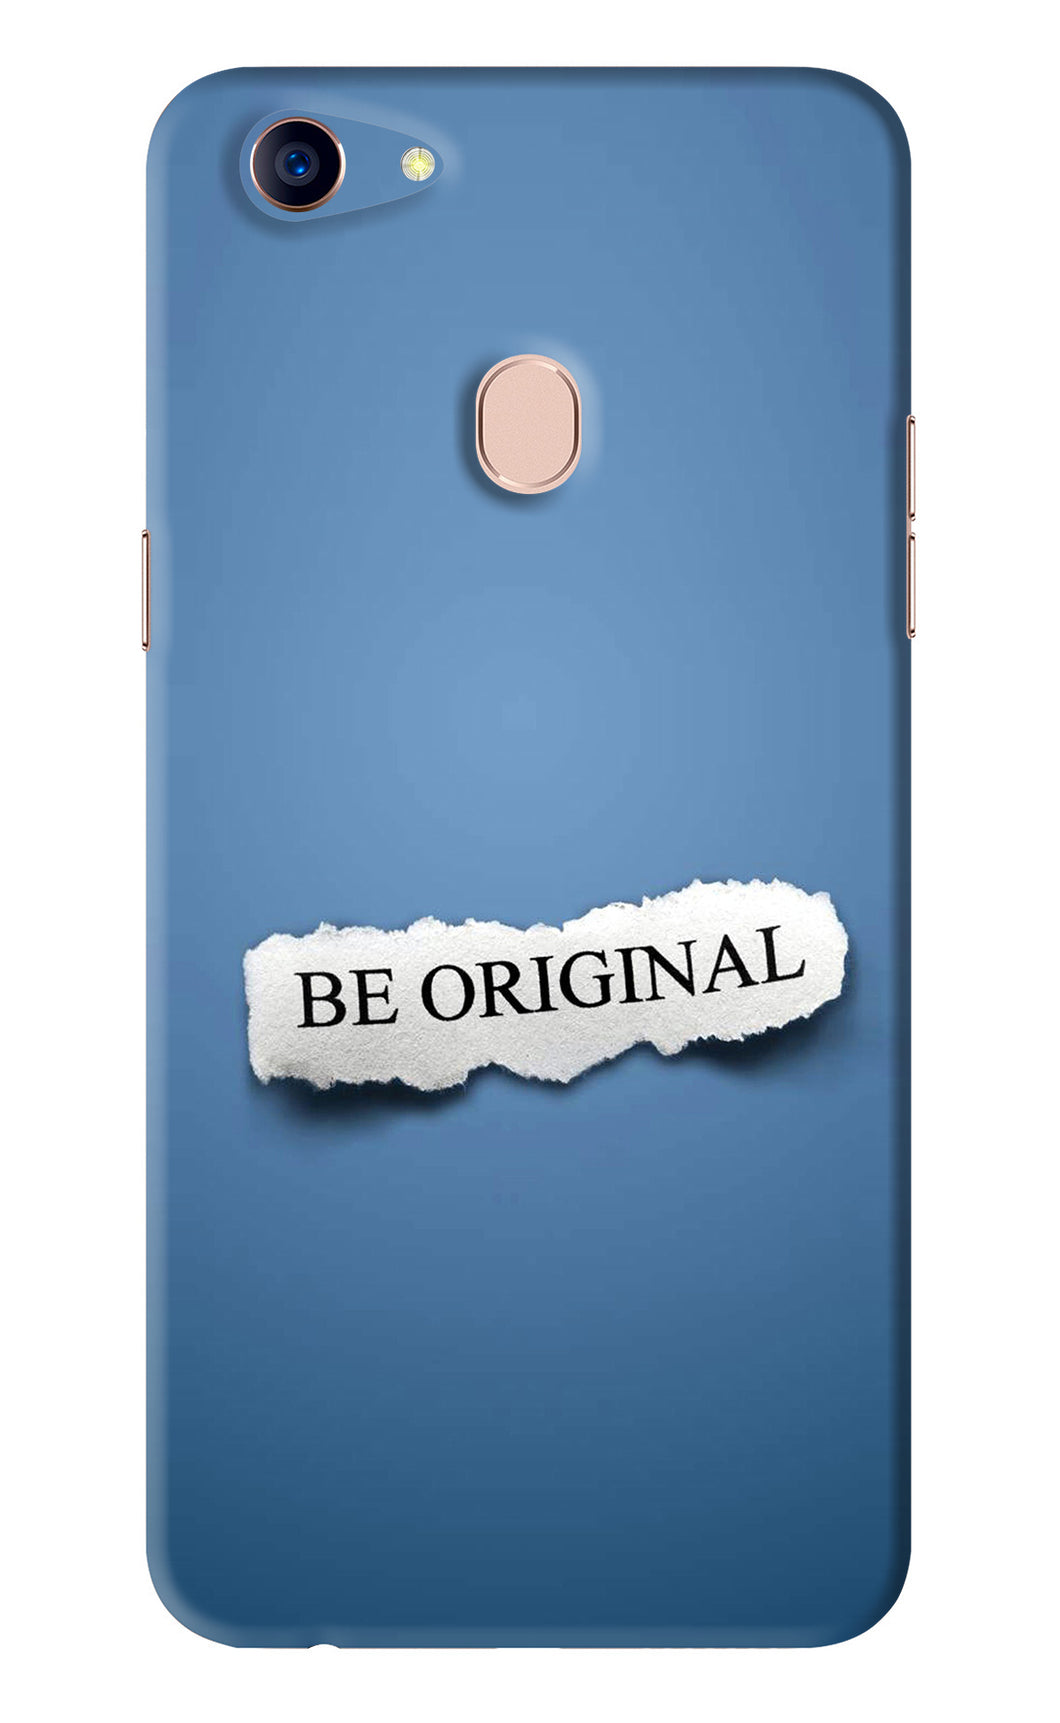 Be Original Oppo F5 Back Skin Wrap